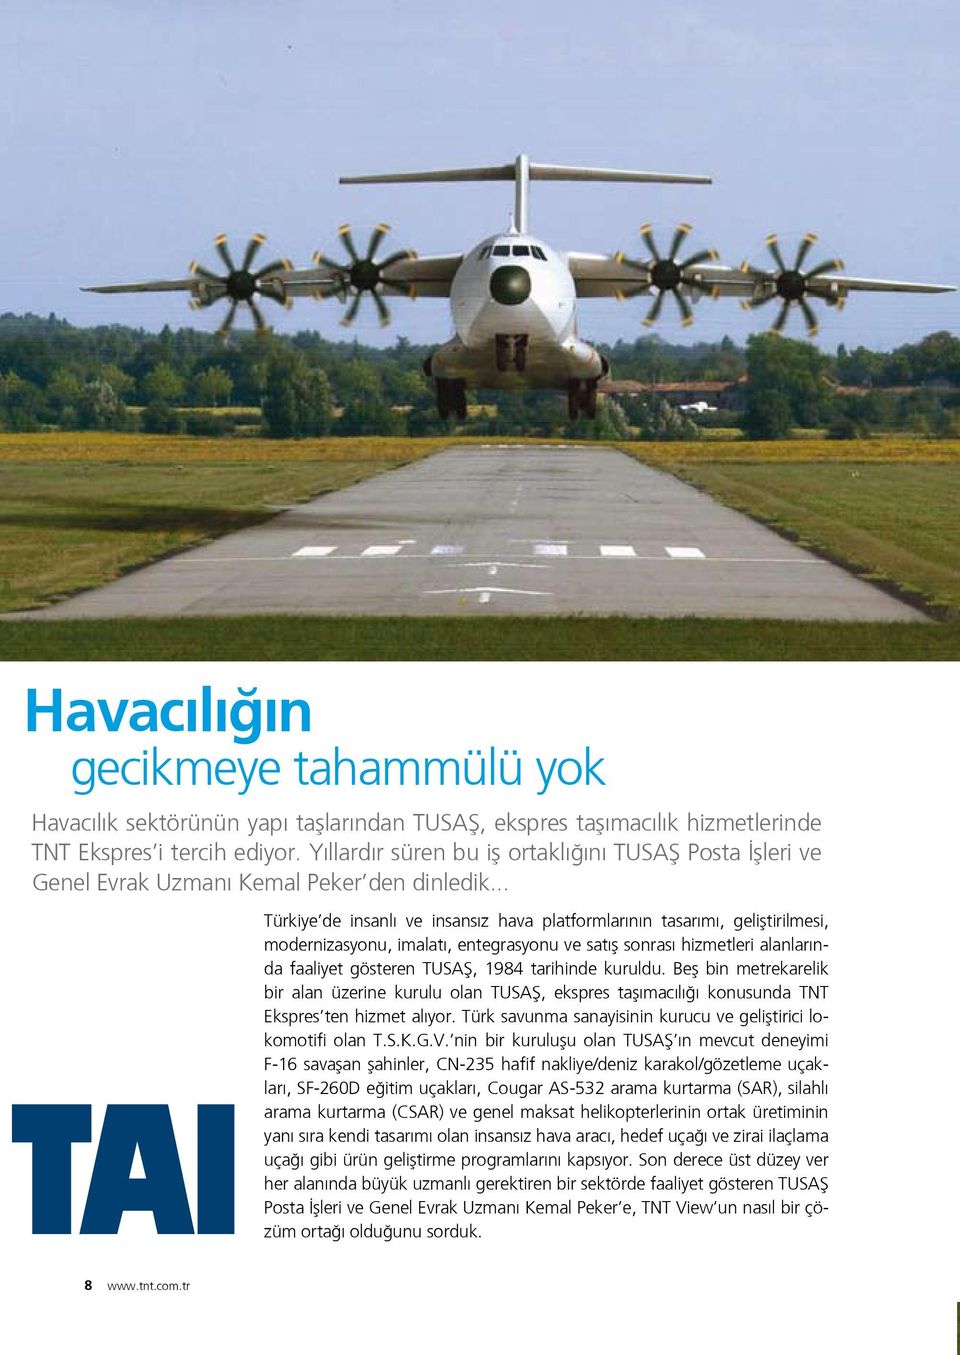 .. Türkiye de insanlı ve insansız hava platformlarının tasarımı, geliştirilmesi, modernizasyonu, imalatı, entegrasyonu ve satış sonrası hizmetleri alanlarında faaliyet gösteren TUSAŞ, 1984 tarihinde